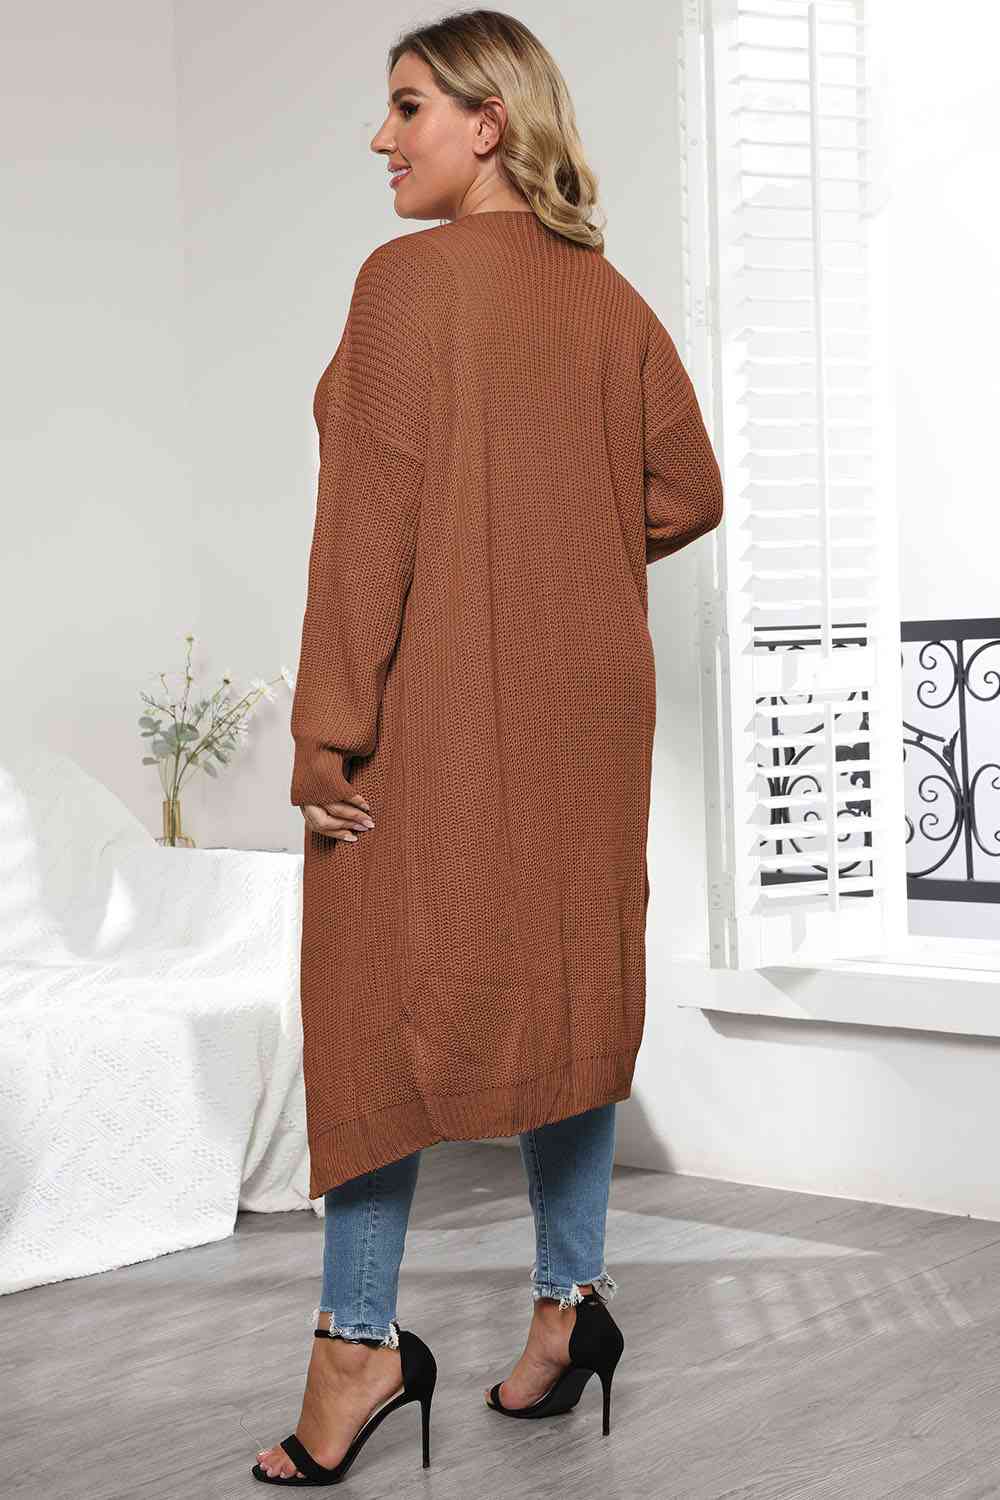 Plus Size Open Front Long Sleeve Cardigan - Body By J'ne